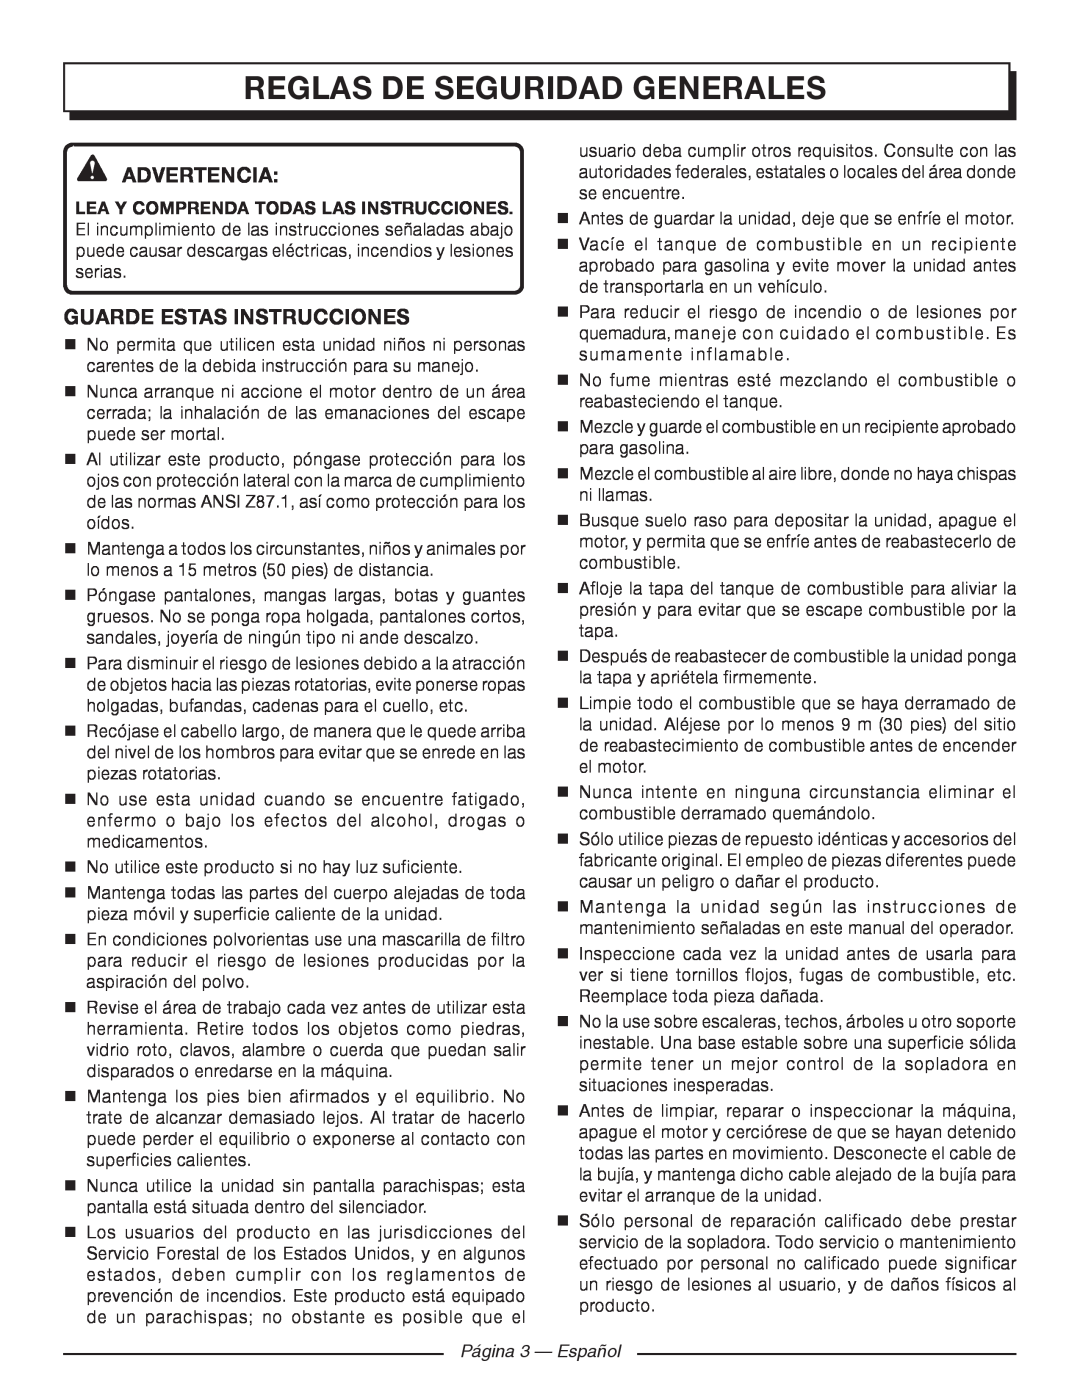 Homelite UT09520 Reglas De Seguridad Generales, Advertencia, Guarde Estas Instrucciones, Página 3 - Español 